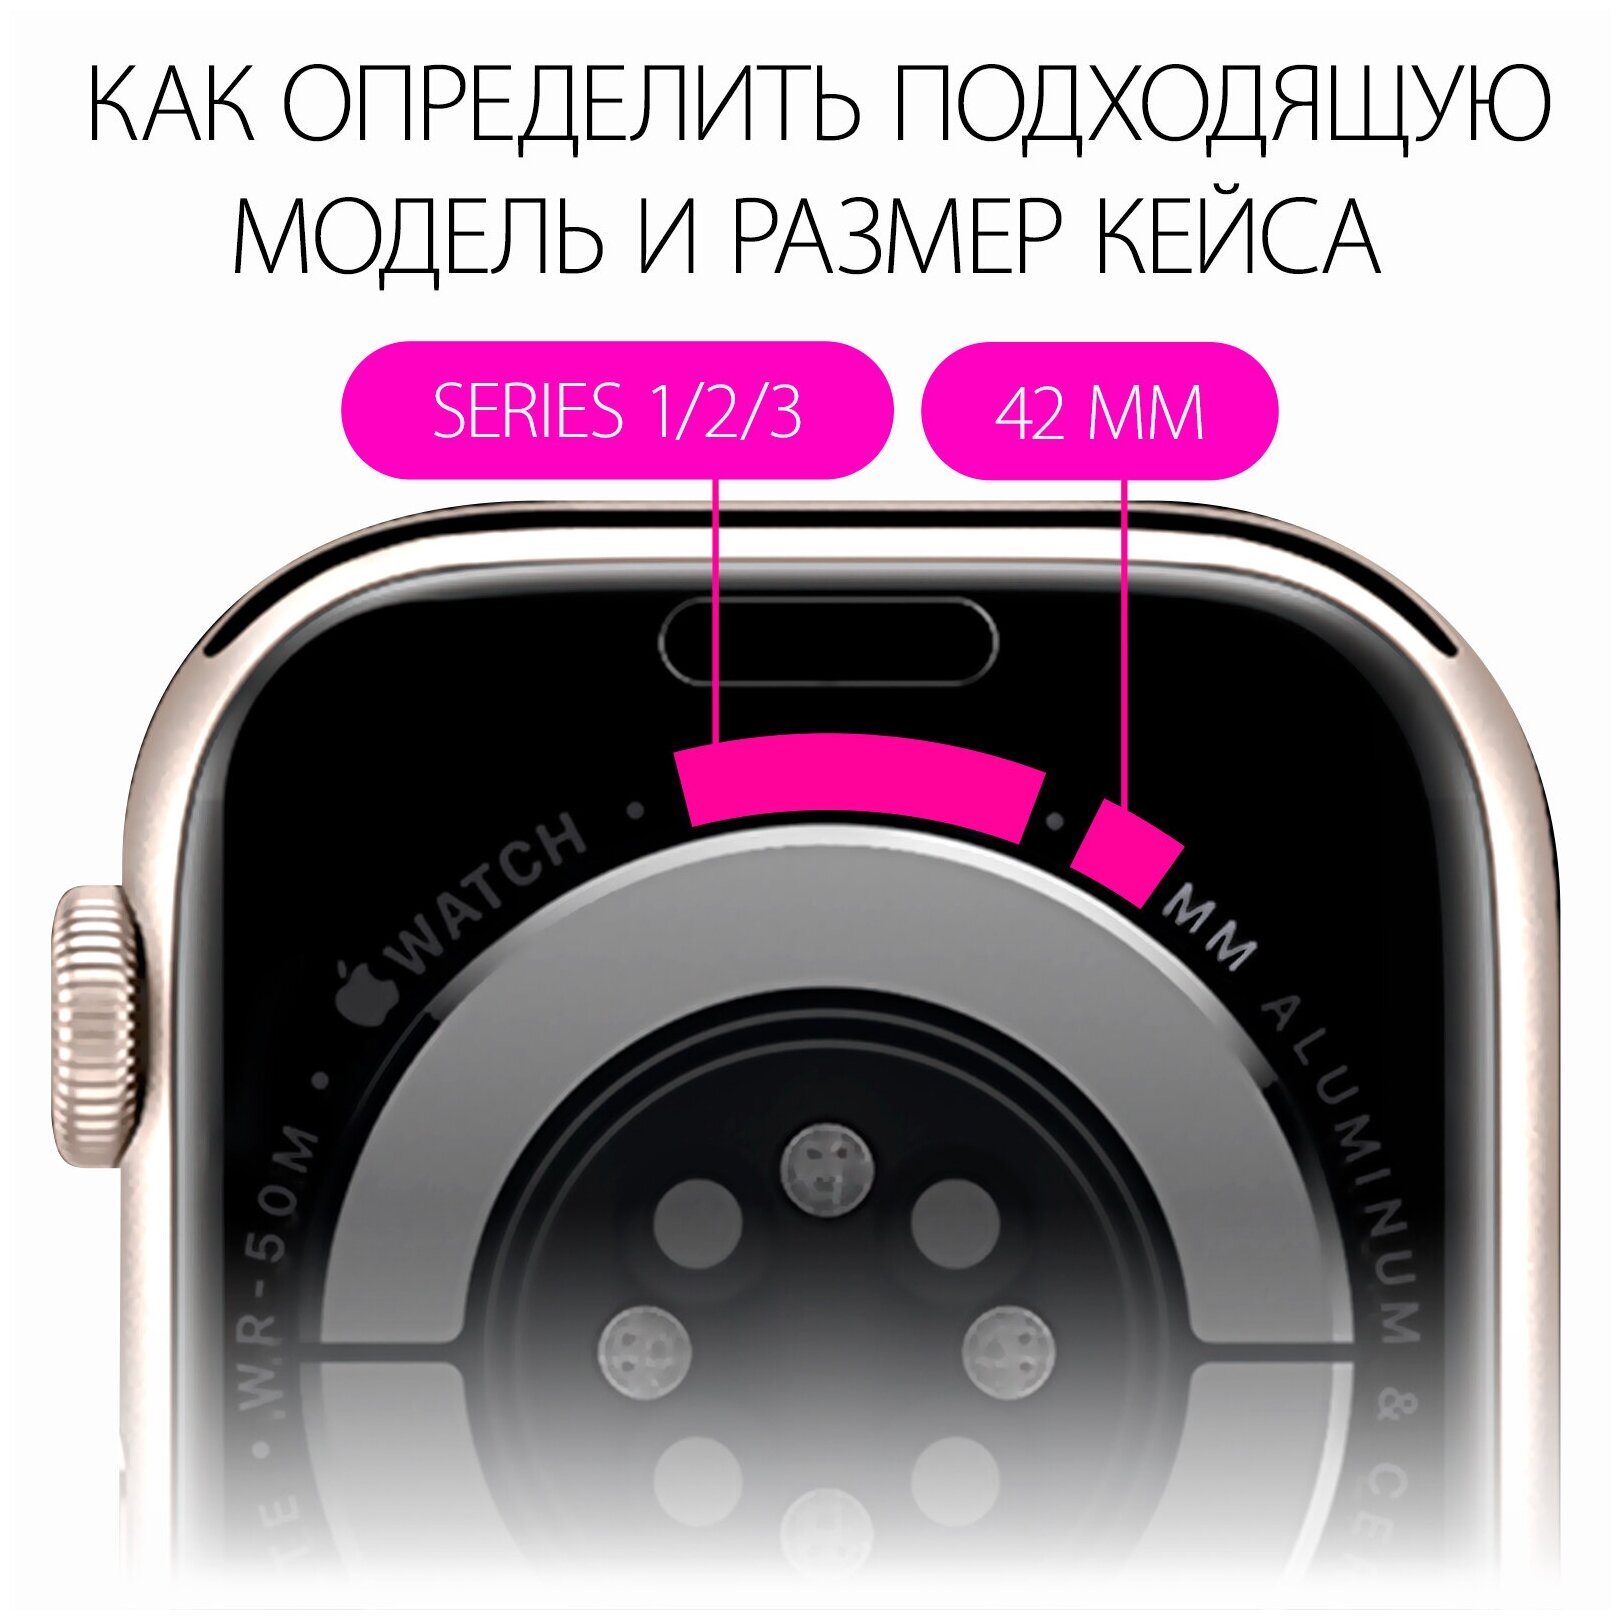 Чехол наарт часы Apple Watch 1/2/3 диагональю экрана 42 Luckroute - Противоударный чехол с защитой от повреждений - Защитный кейс